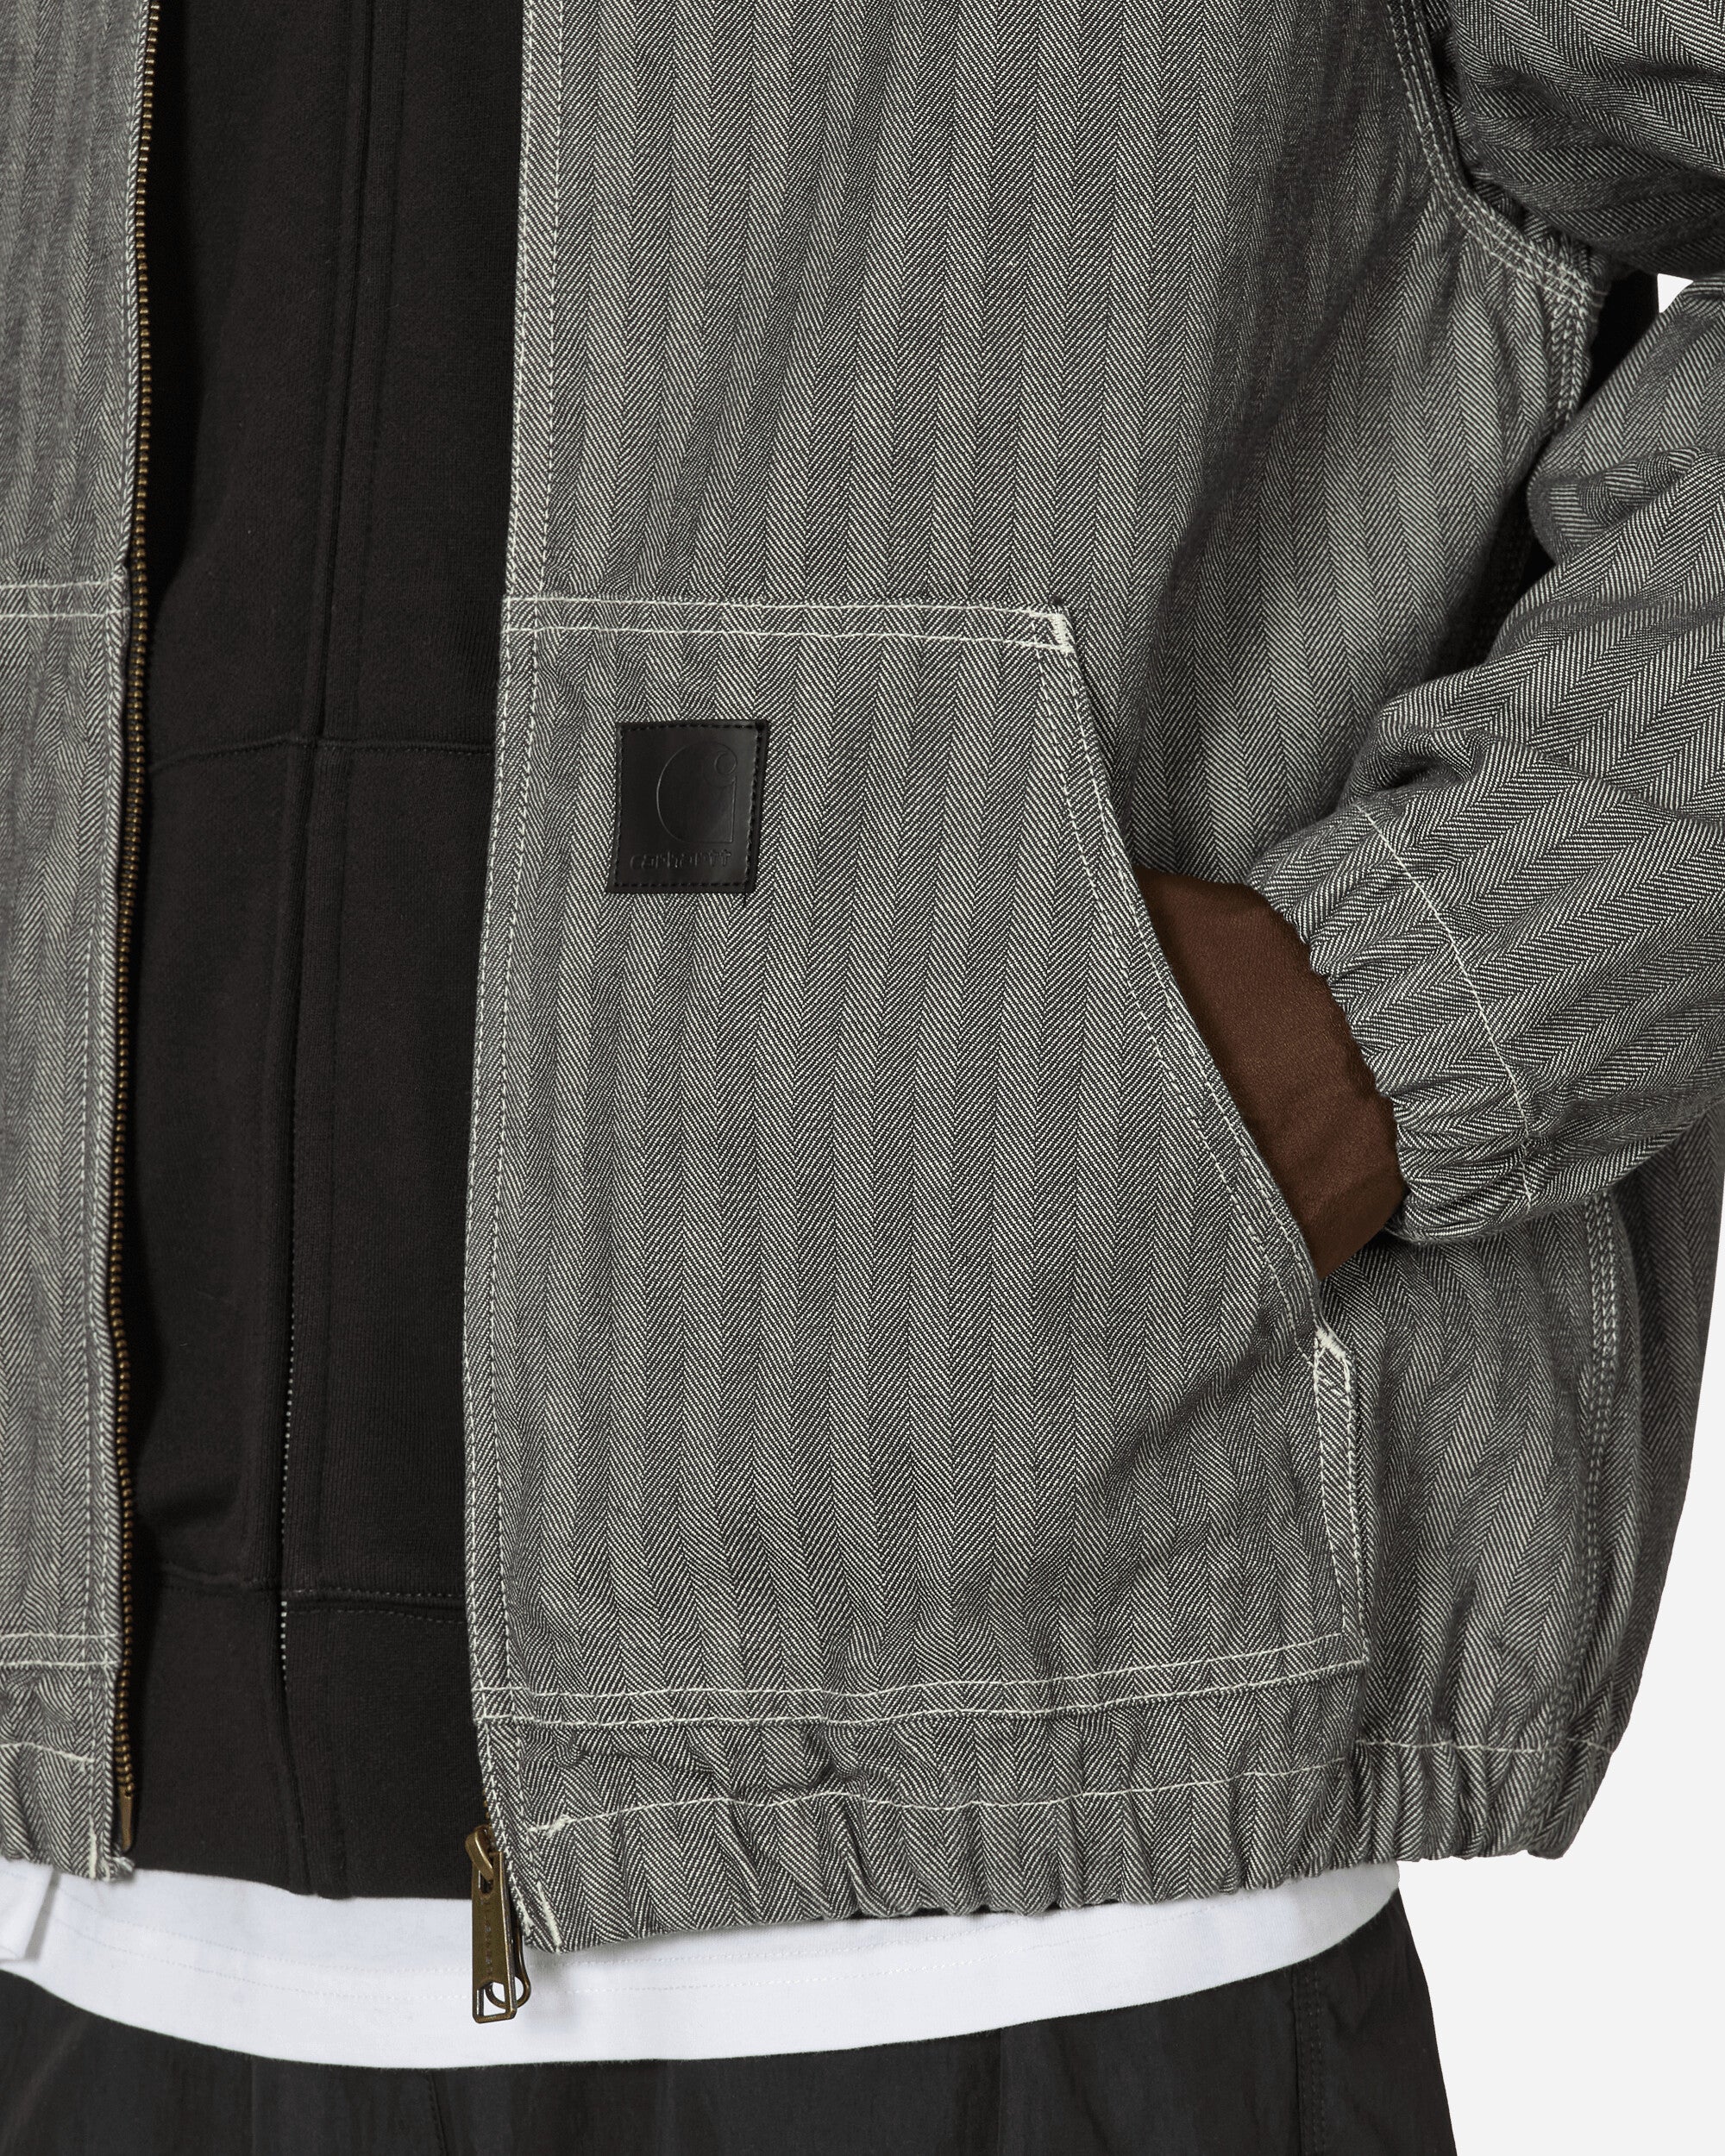 Carhartt WIP Menard Jacket Grey Rinsed Coats and Jackets Jackets I033574 9102